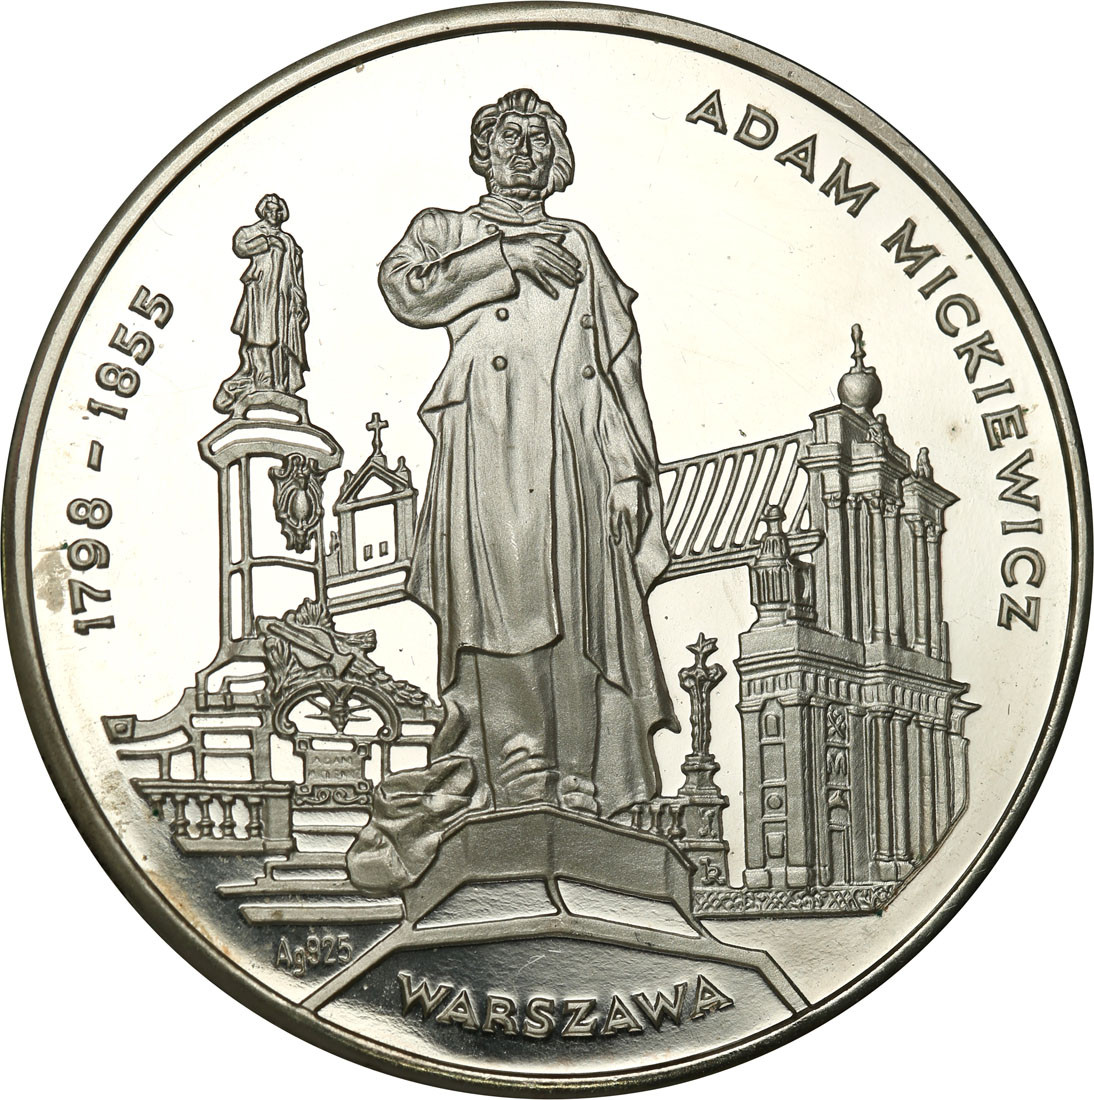 Polska. Medal Adam Mickiewicz - Vilnius, srebro